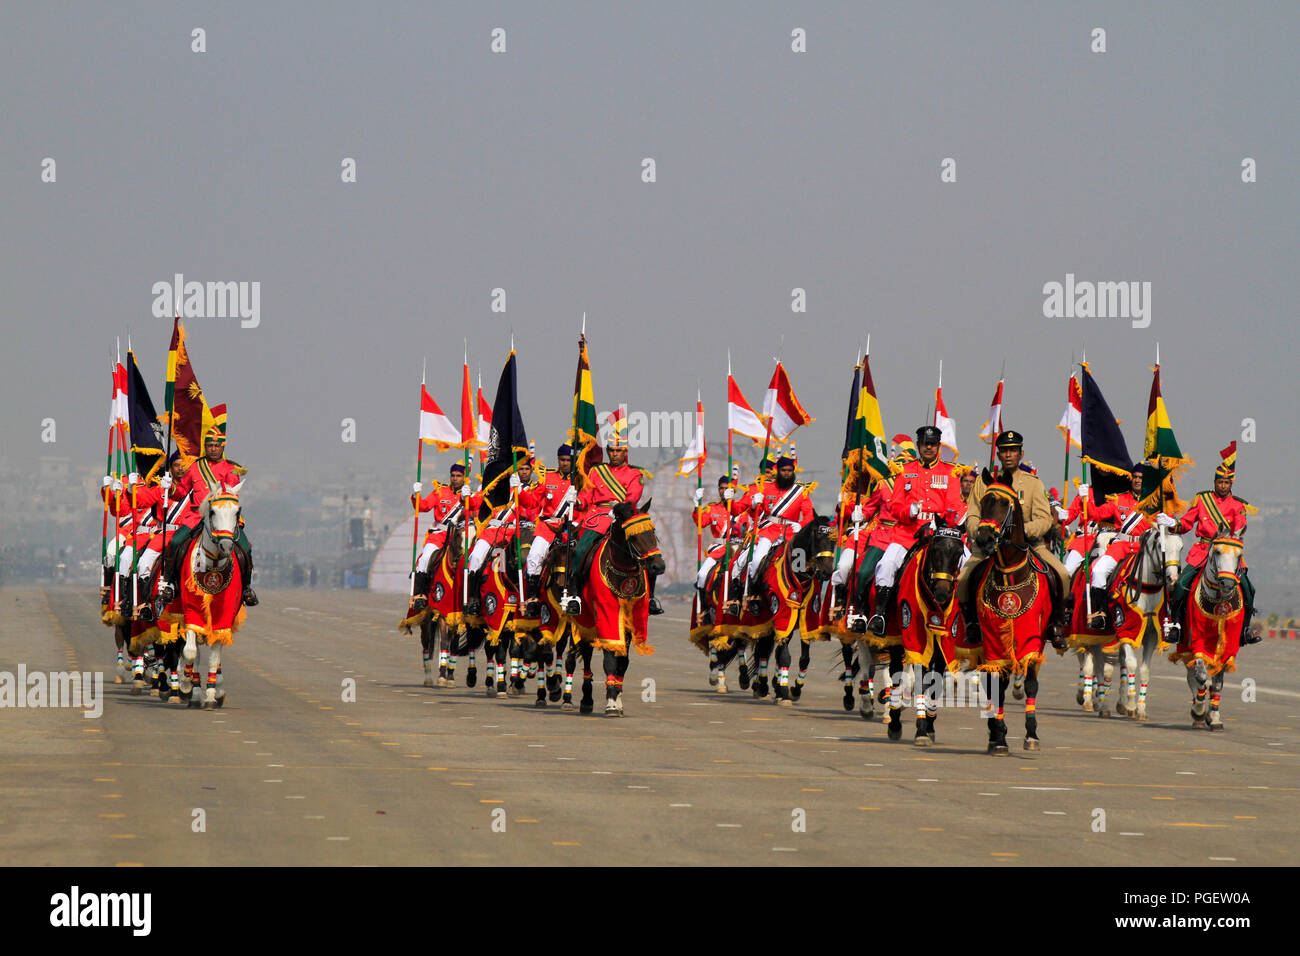 Armee, Marine, Luftwaffe und andere Streitkräfte Etappensieg Day Parade an der Nationalen Paradeplatz. Dhaka, Bangladesch. Stockfoto